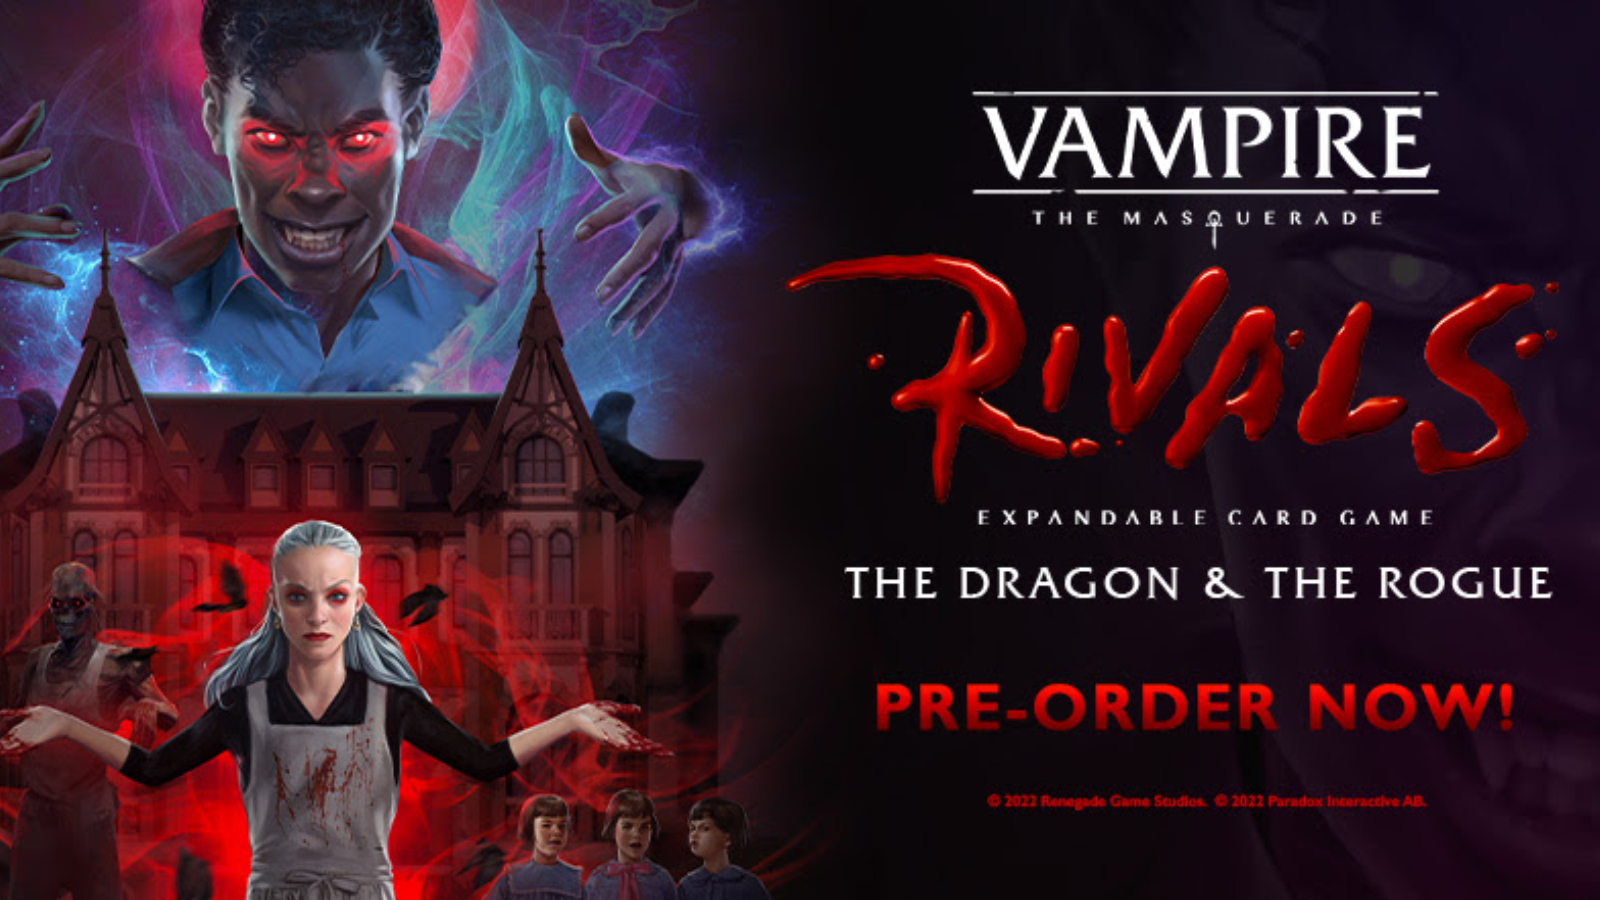 Vampire: The Masquerade 5th Edition - Renegade Game Studios, Vampire The  Masquerade 5th Edition